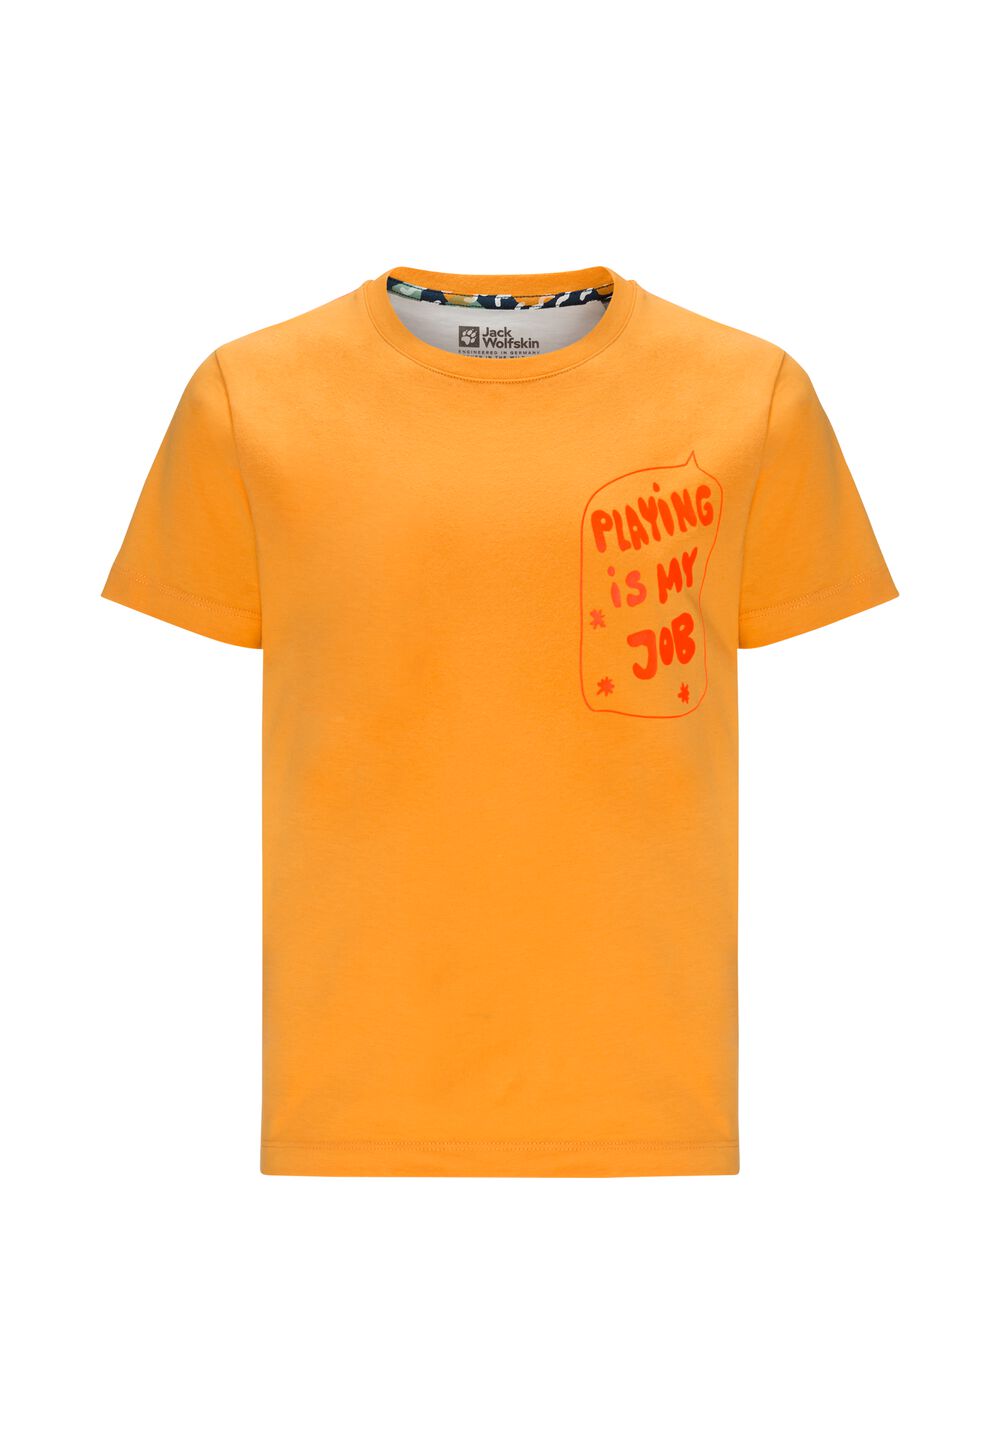 Jack Wolfskin Nachhaltiges T-Shirt Kinder Villi T-Shirt Kids 104 braun orange pop von Jack Wolfskin